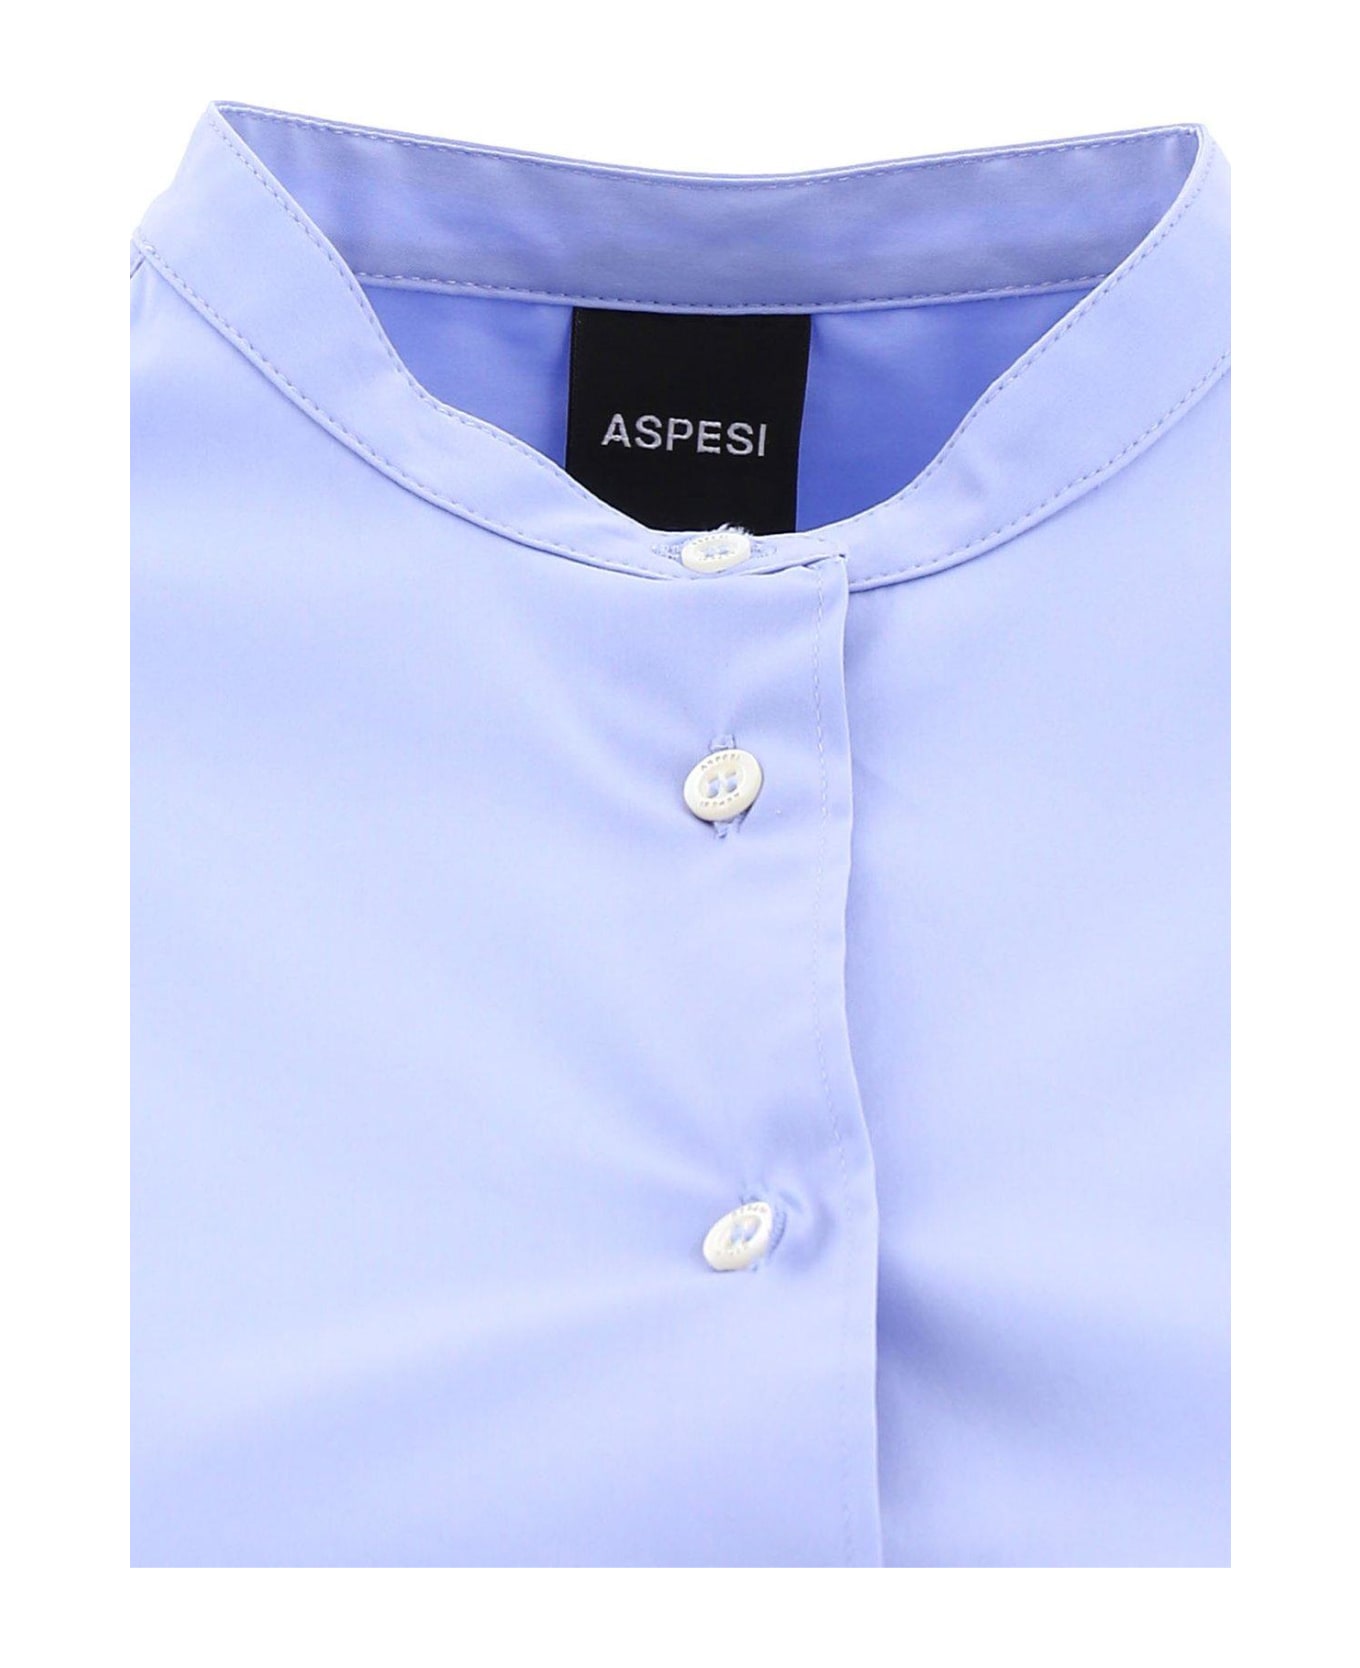 Aspesi Stretch Poplin Shirt - Sky Blue